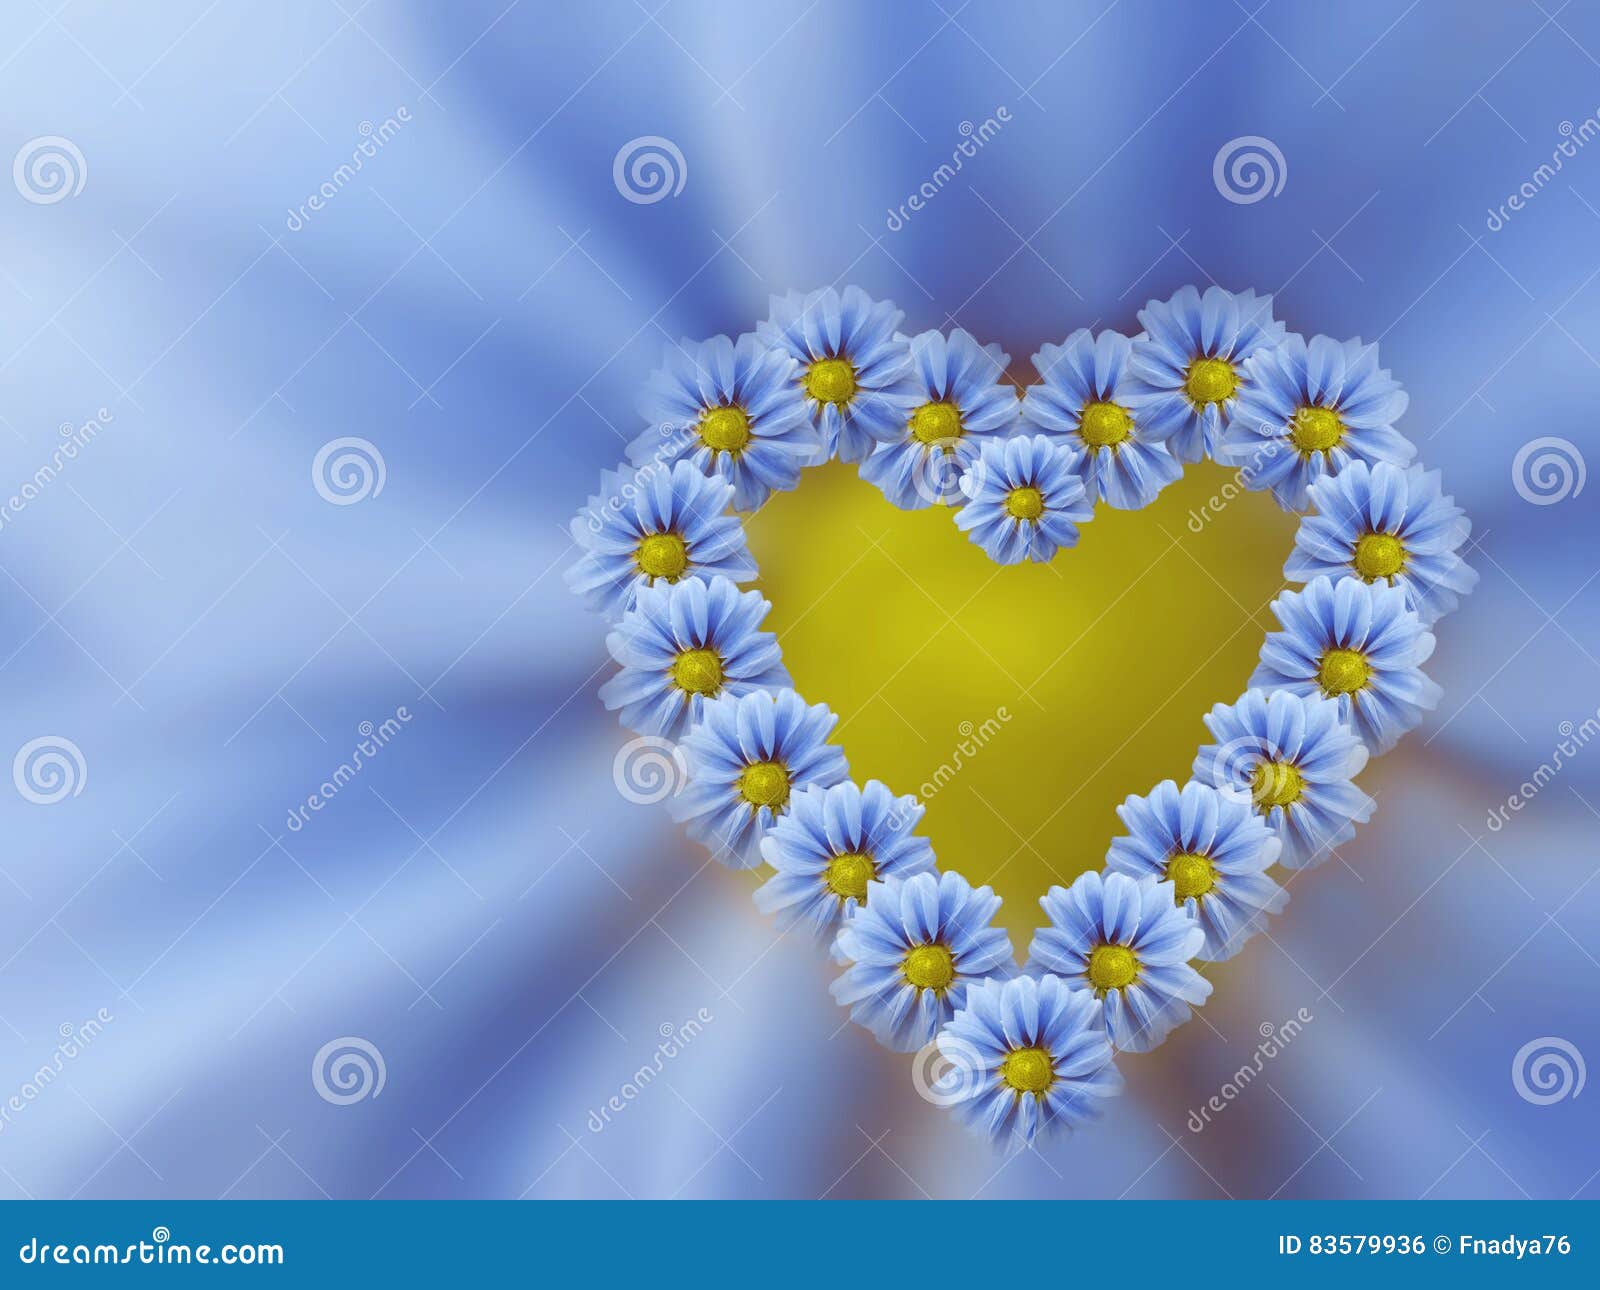 Ekspression kommando Humoristisk Light Blue Heart of Flowers on Light Blue Blurred Background. Floral  Composition. Stock Illustration - Illustration of dahlias, blurred: 83579936